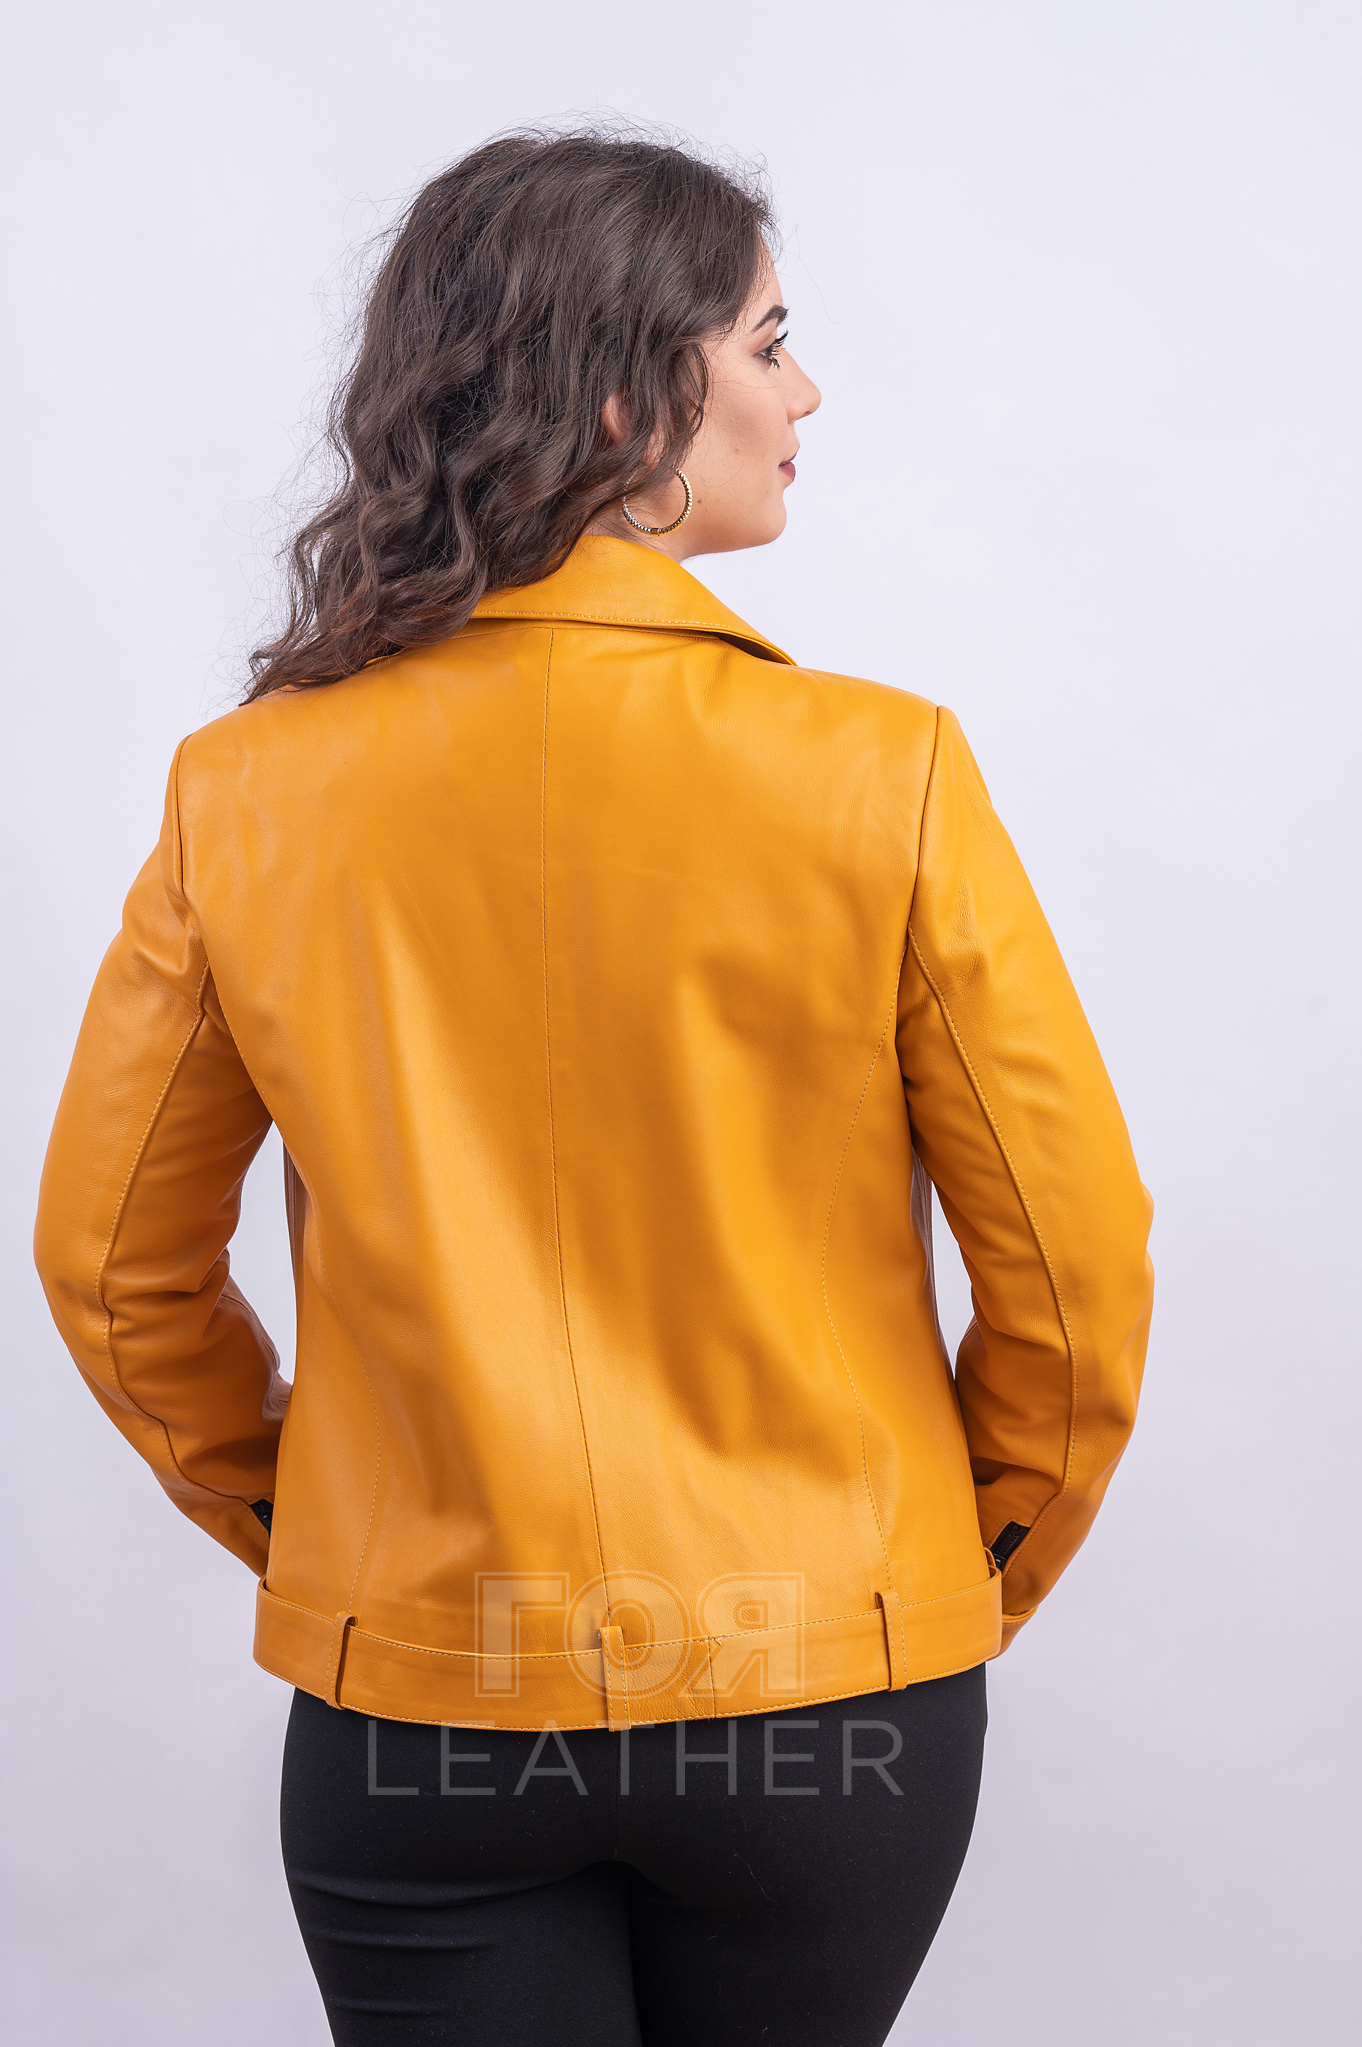 Жълто спортно кожено яке от ГОЯ Leather. Нов модел байкер стил яке в уникален жълт цвят. Спортен модел с класическите за стила аксесоари като, ципове, капси и колан с катарама. Подходящо за сезон пролет и есен.